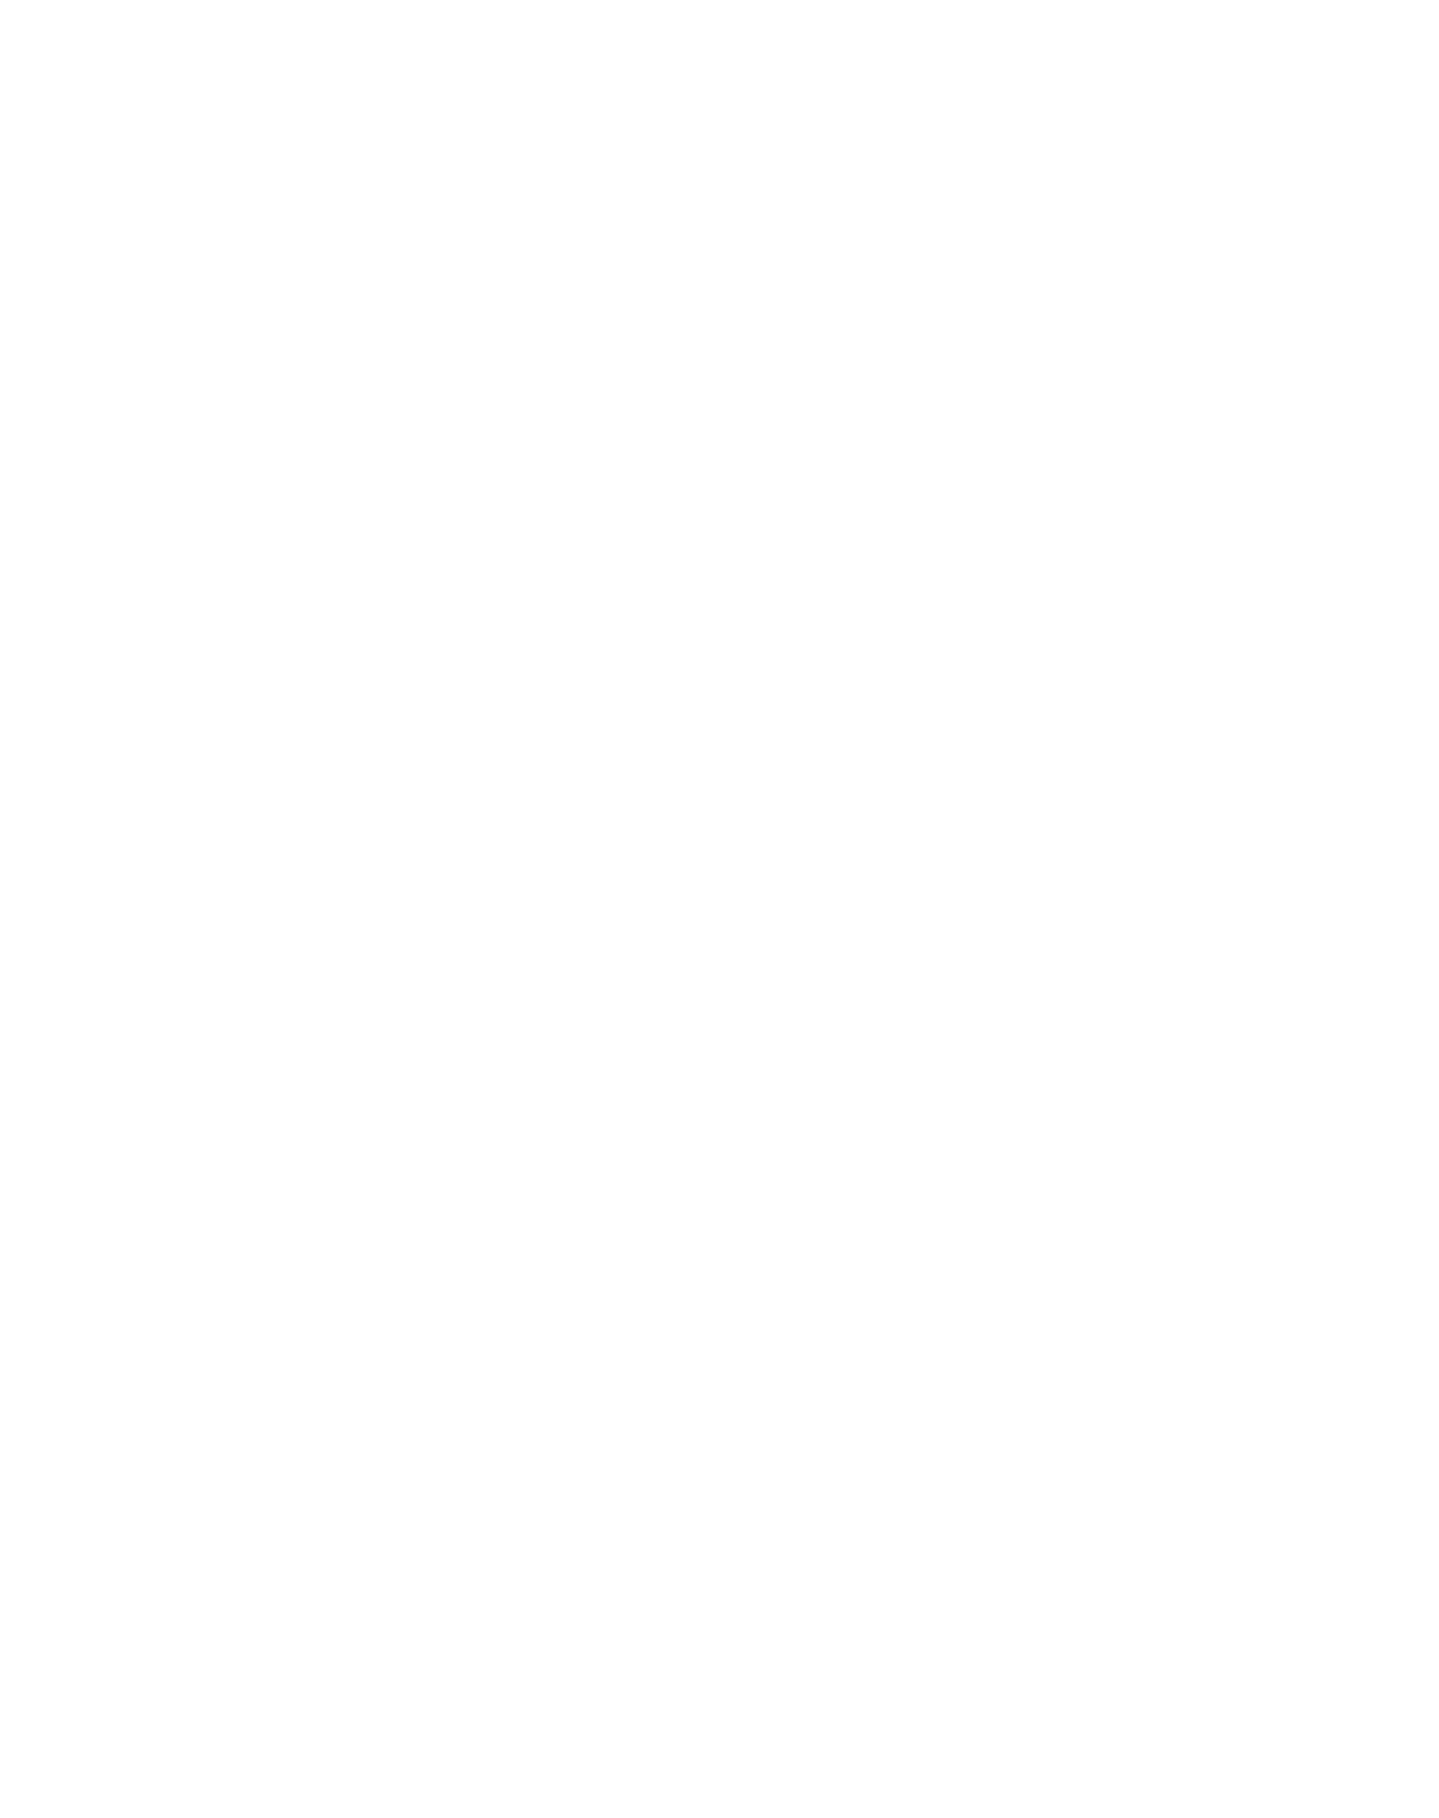 Top Notch Outdoors LLC